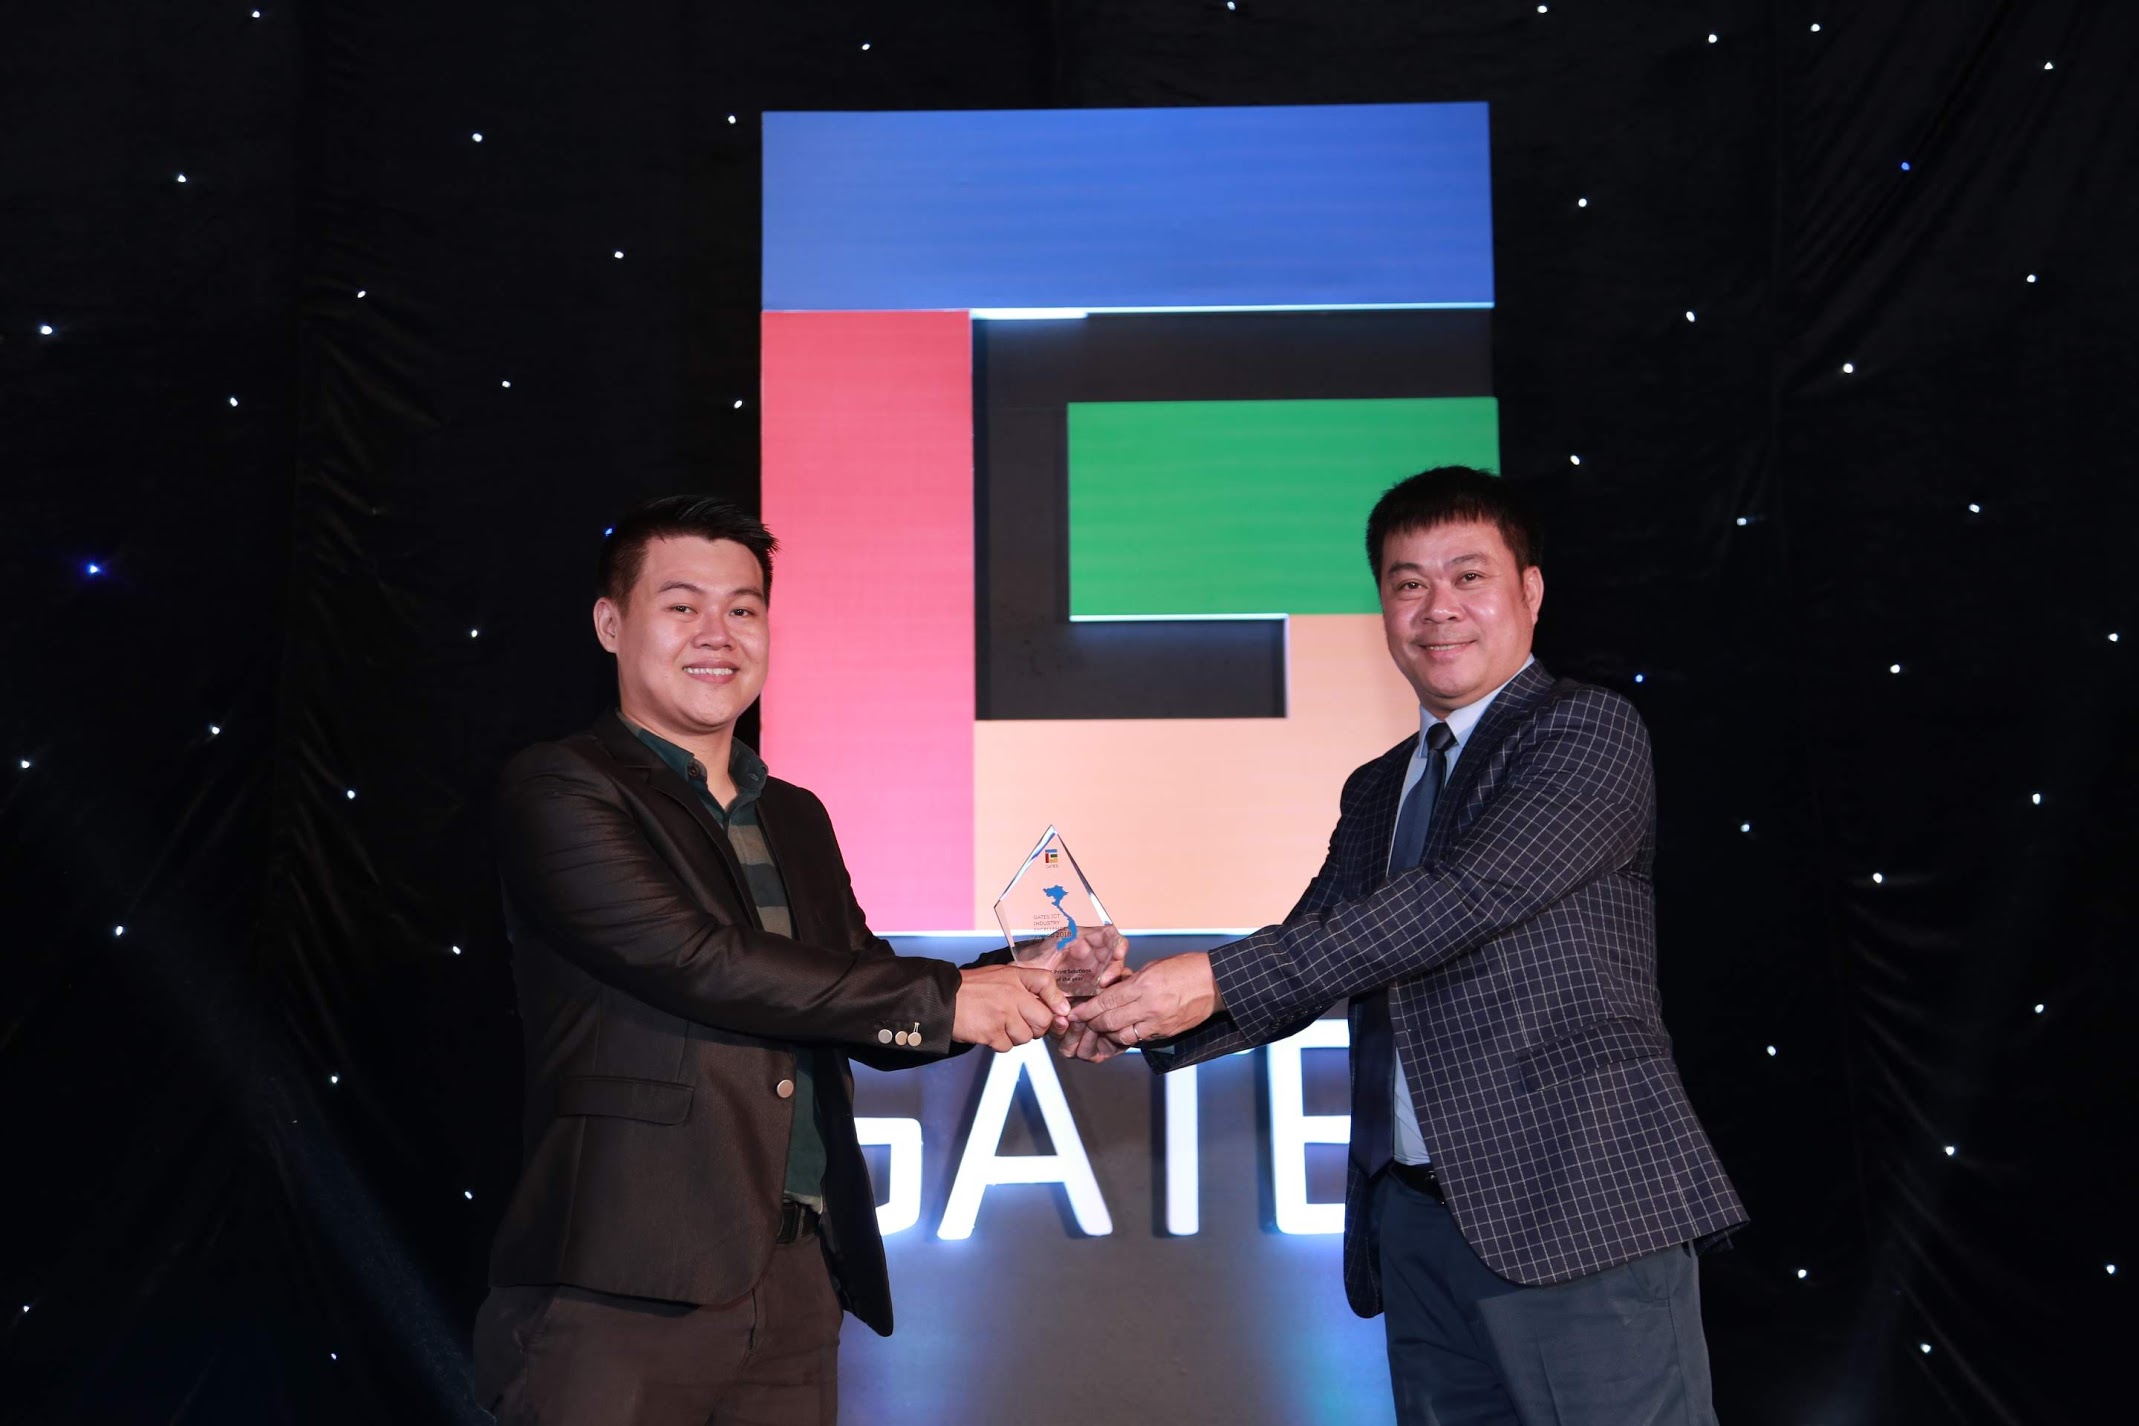 Hội nghị GATES Việt Nam 2019: Cơ hội kết nối giữa đối tác kênh và các hãng công nghệ để thúc đẩy xu thế CHUYỂN ĐỔI SỐ